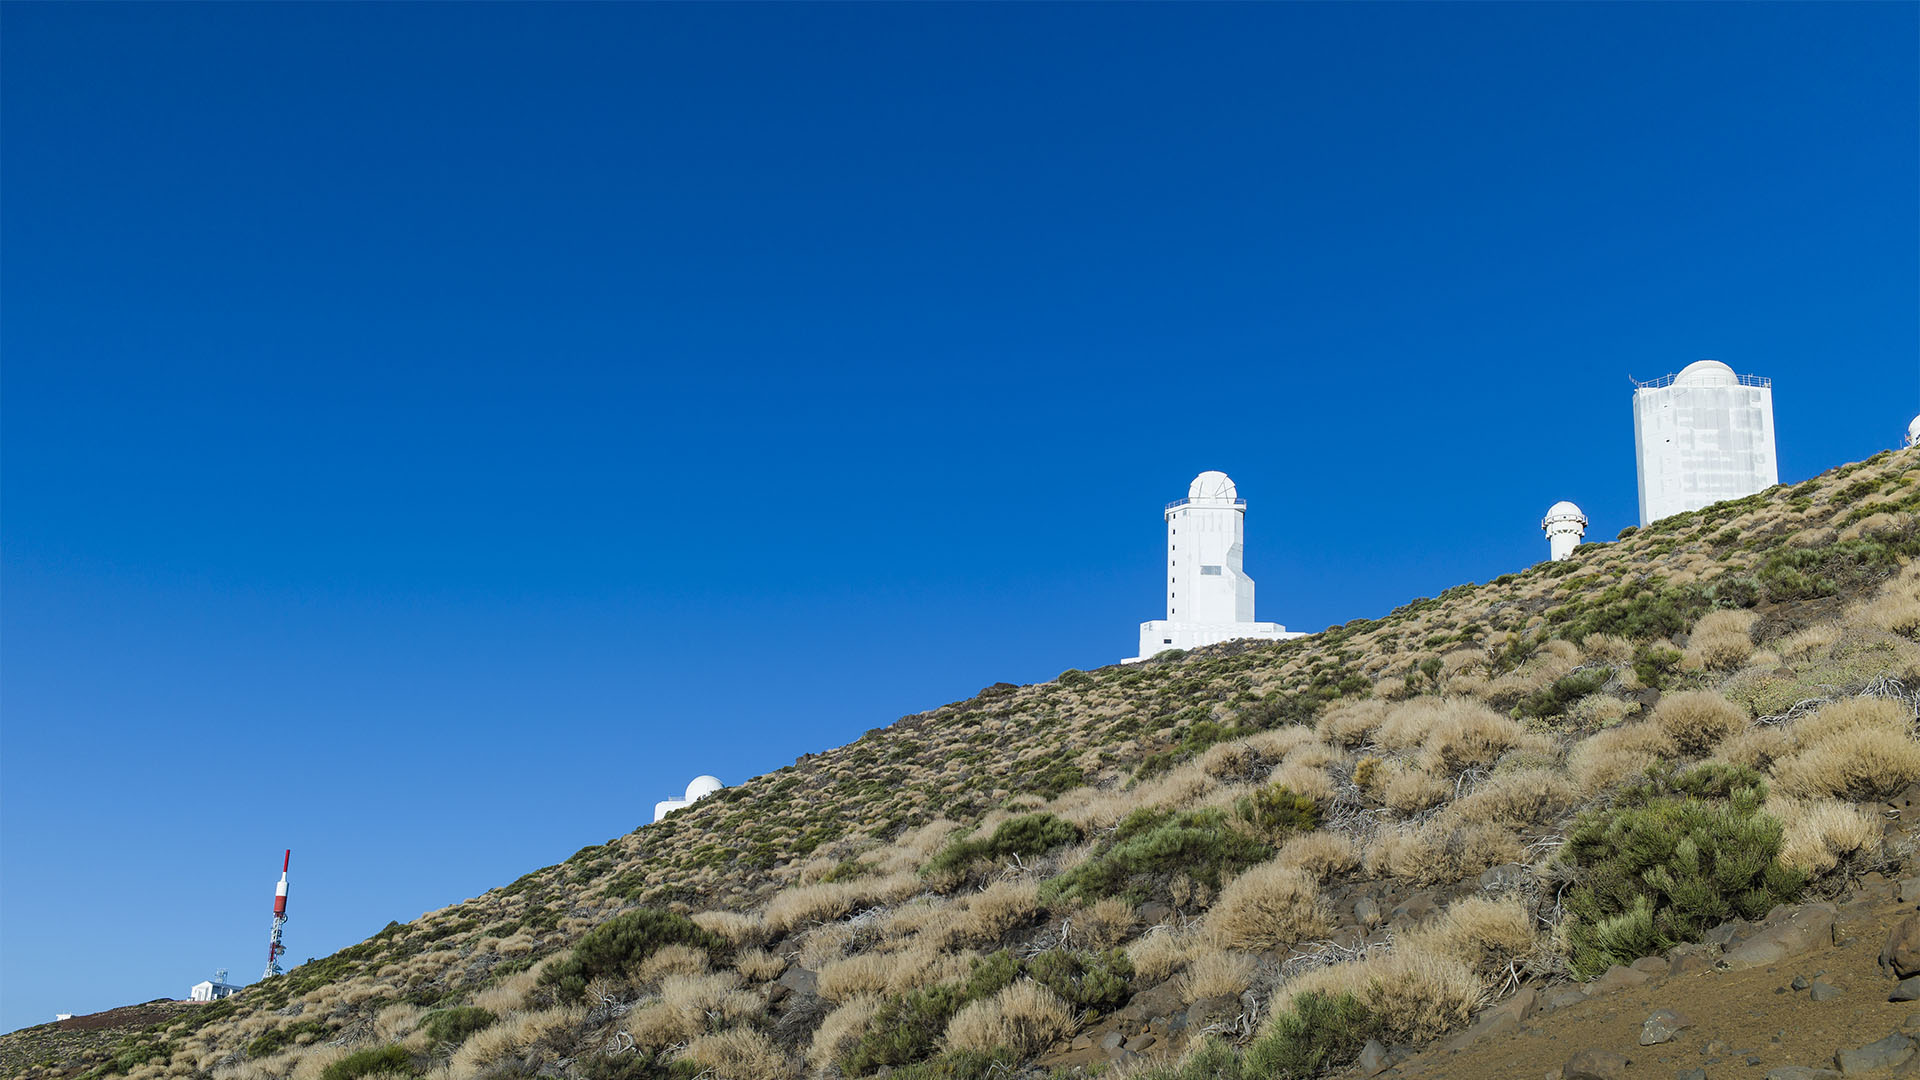 Das Izaña Observatorium auf Teneriffa strahl blendet weiss in der Abendsonne gegen tiefblauen Himmel.